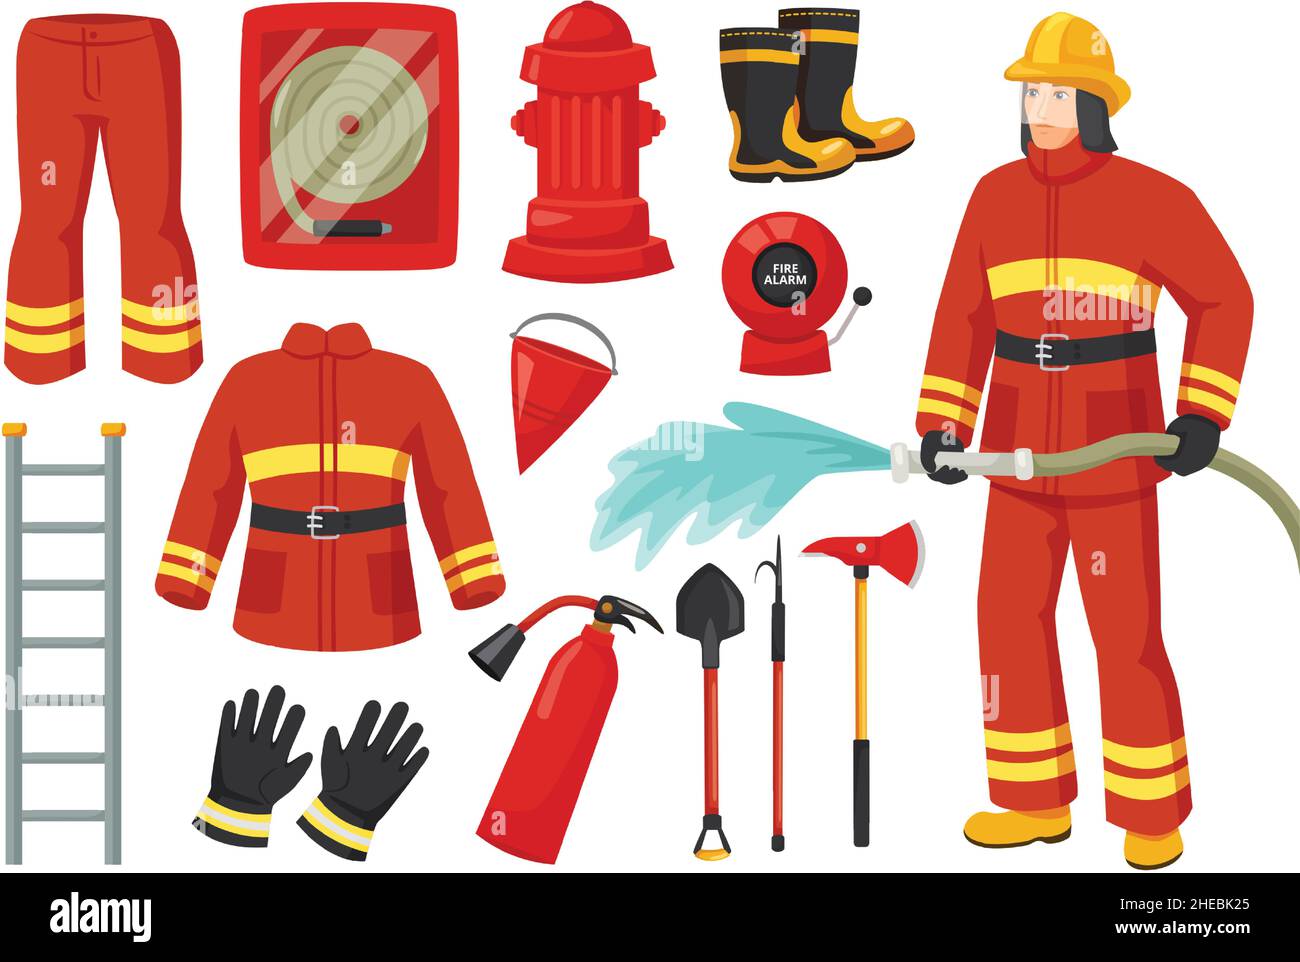 Personnage de pompier de dessin animé avec équipement et outils de lutte contre l'incendie.Uniforme de pompier, borne d'incendie, alarme incendie, extincteur, ensemble de vecteurs de boyau de feu.Service d'urgence pour la sécurité et la protection Illustration de Vecteur